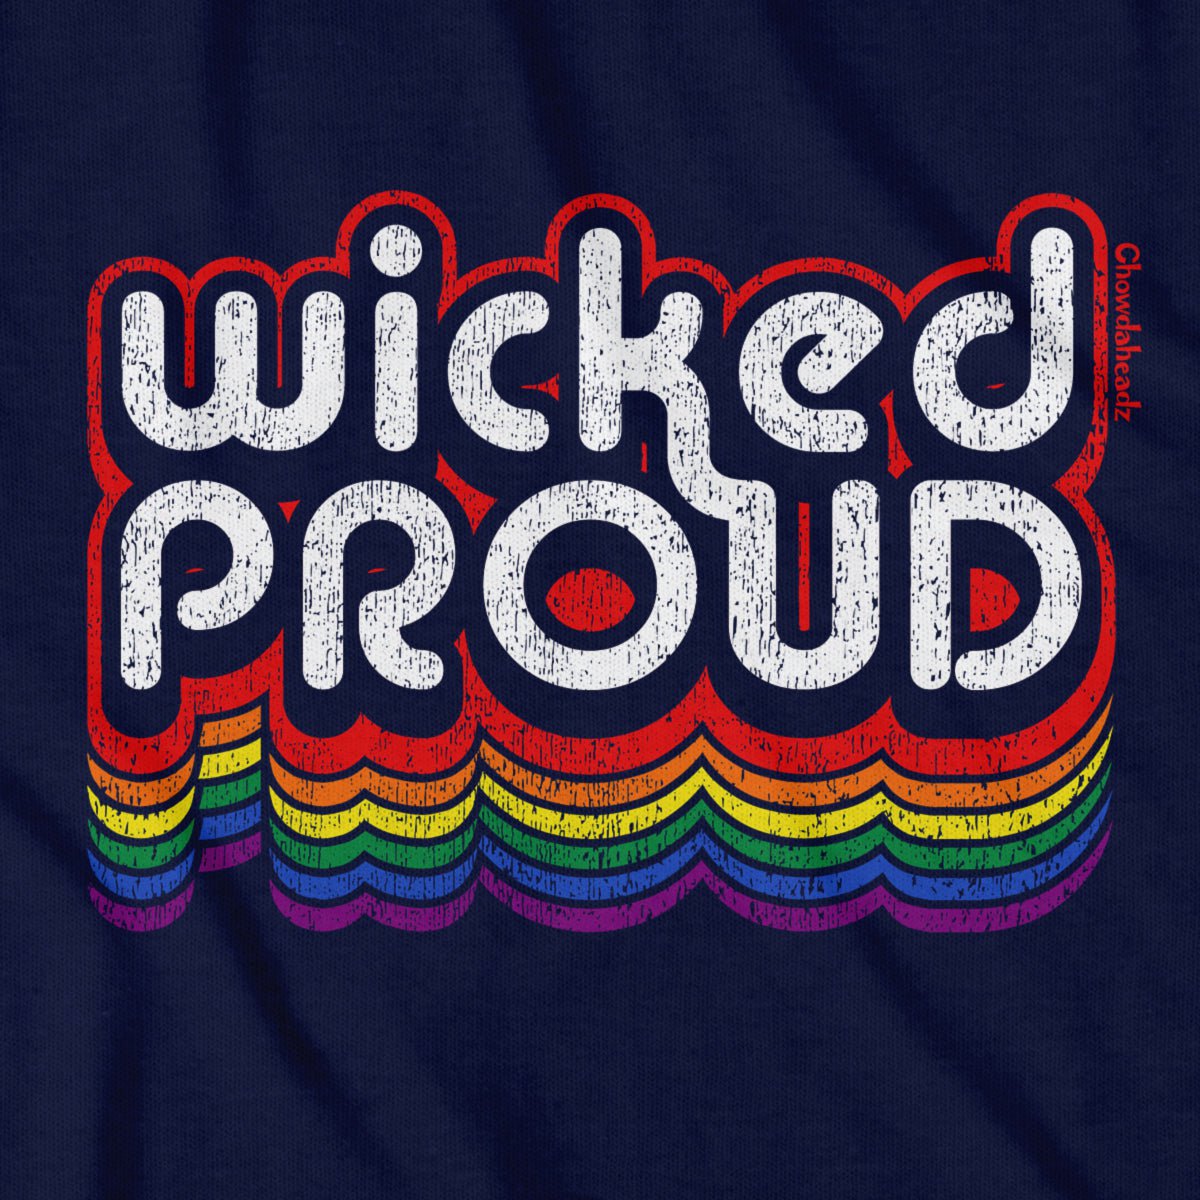 Wicked Proud Retro T-Shirt - Chowdaheadz